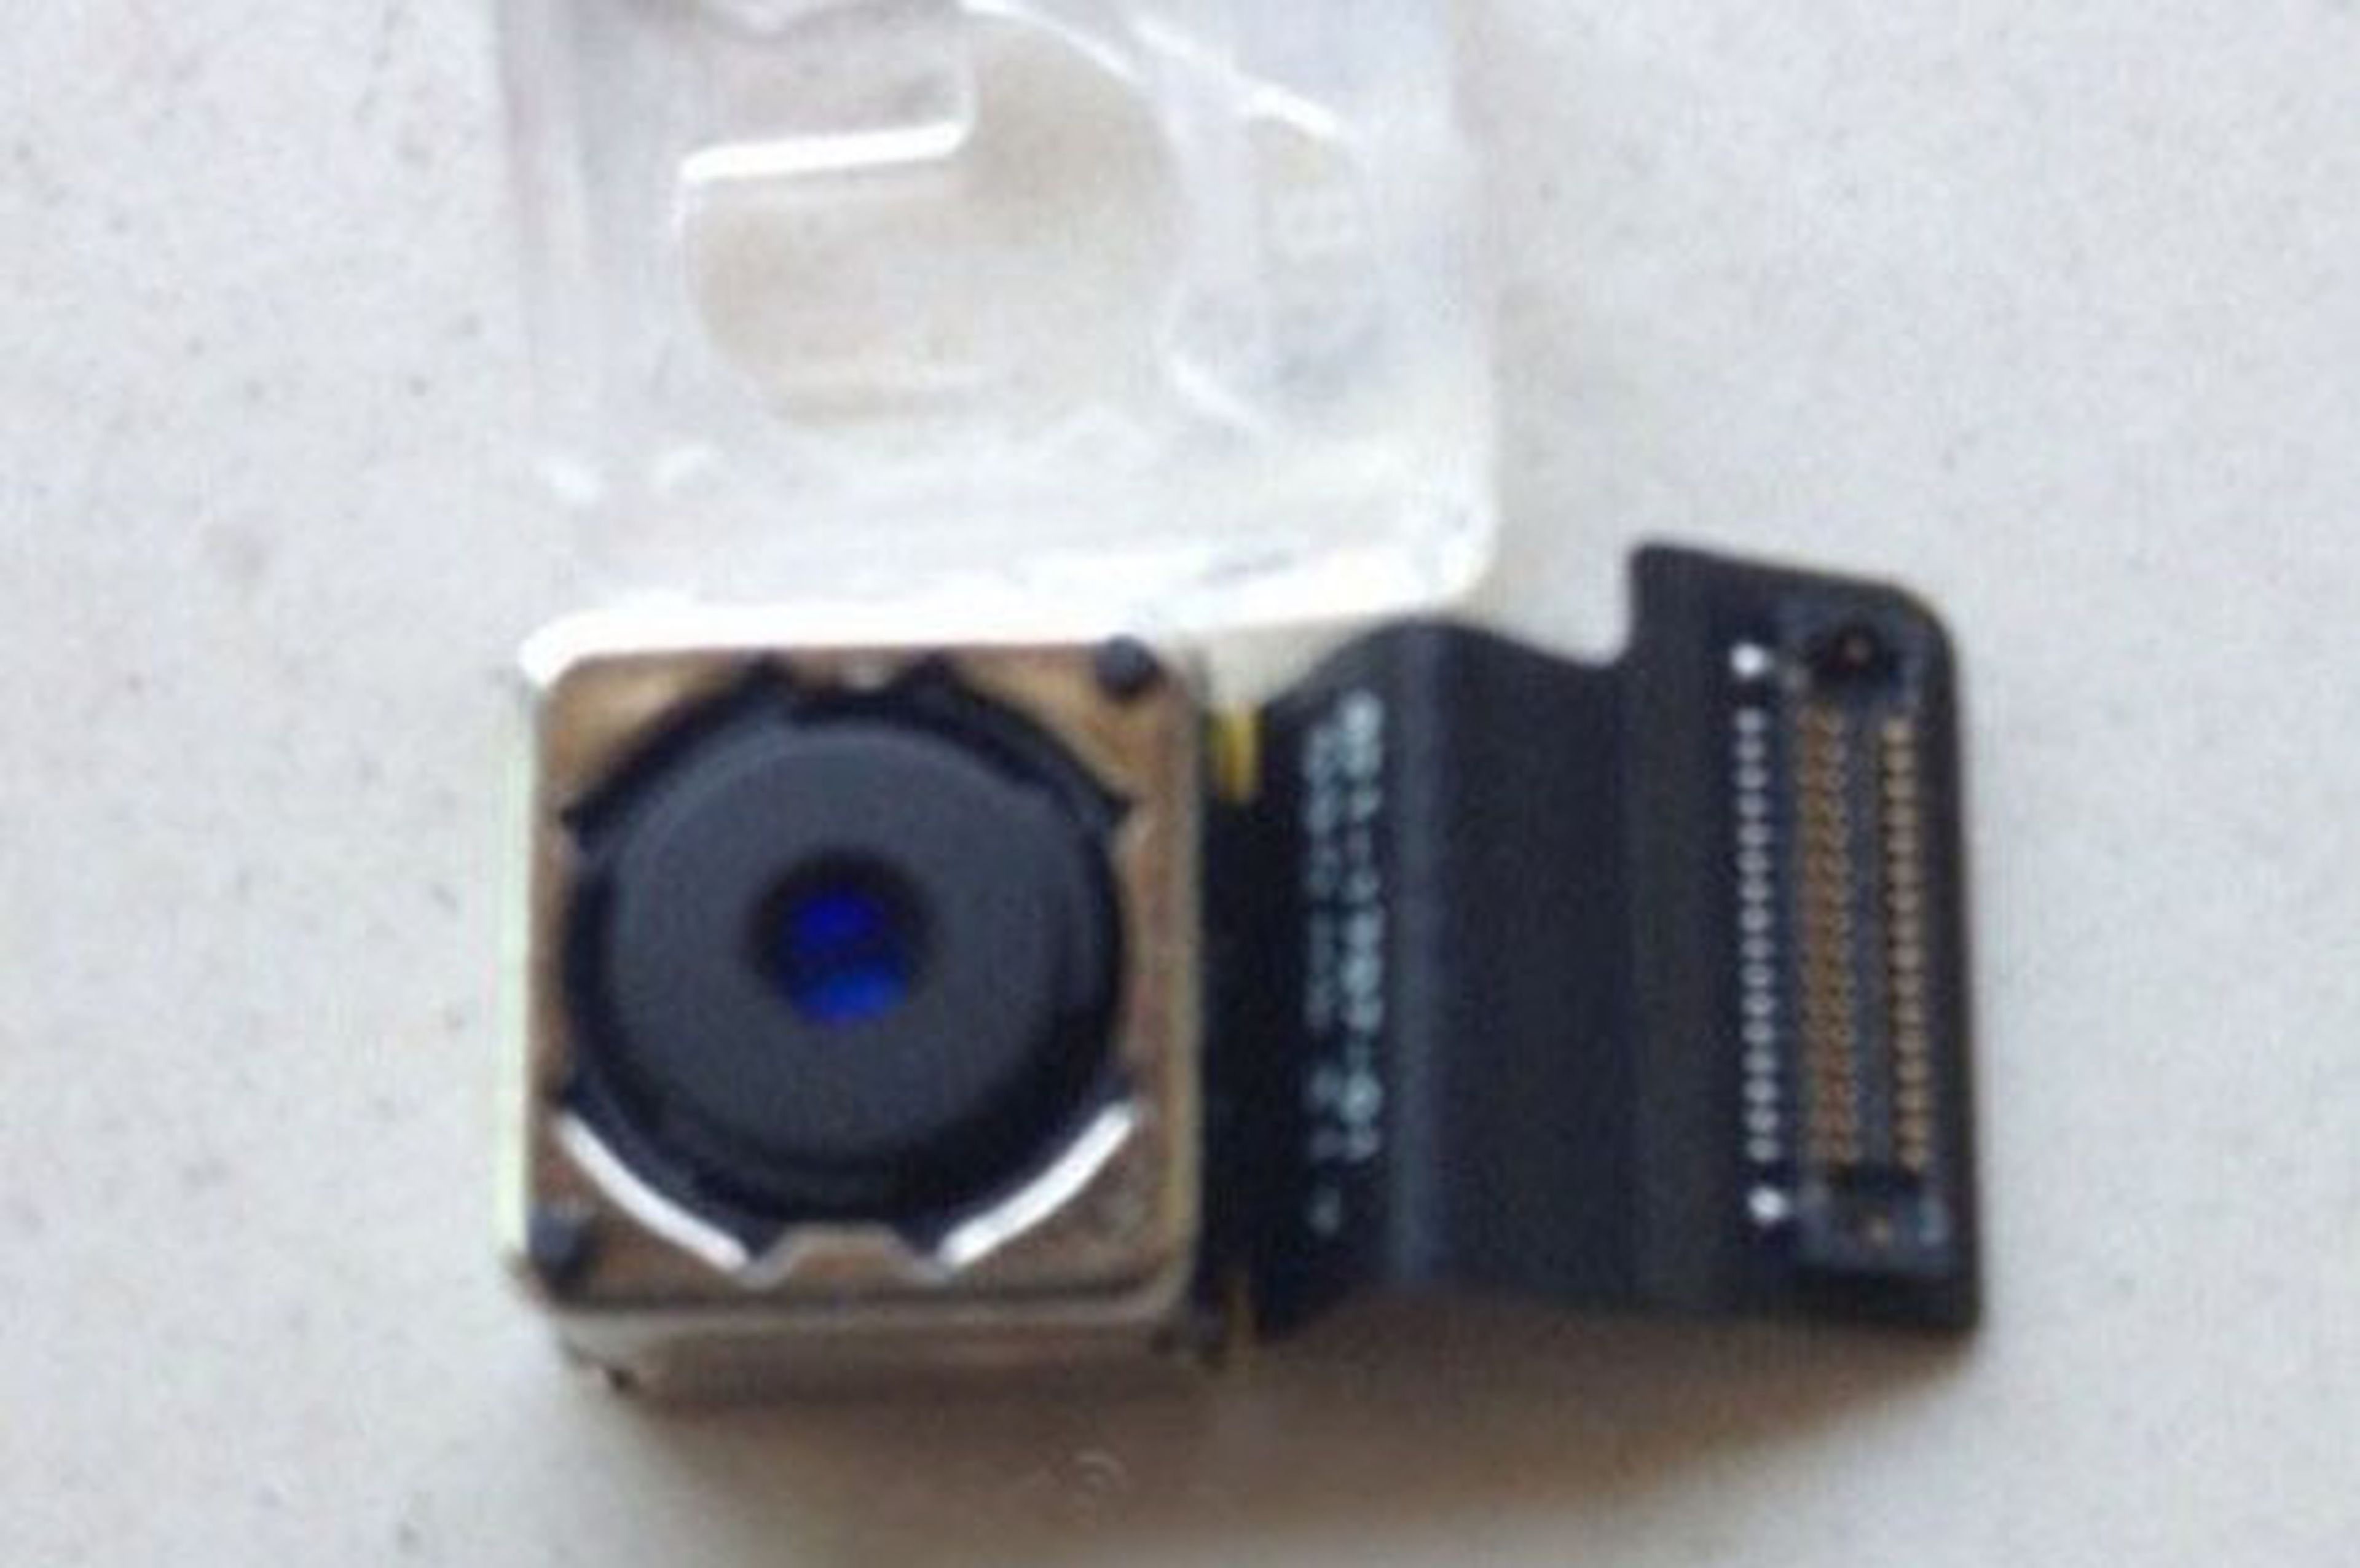 El iPhone 5C tendrá una cámara de 8 MP igual que el iPhone 5